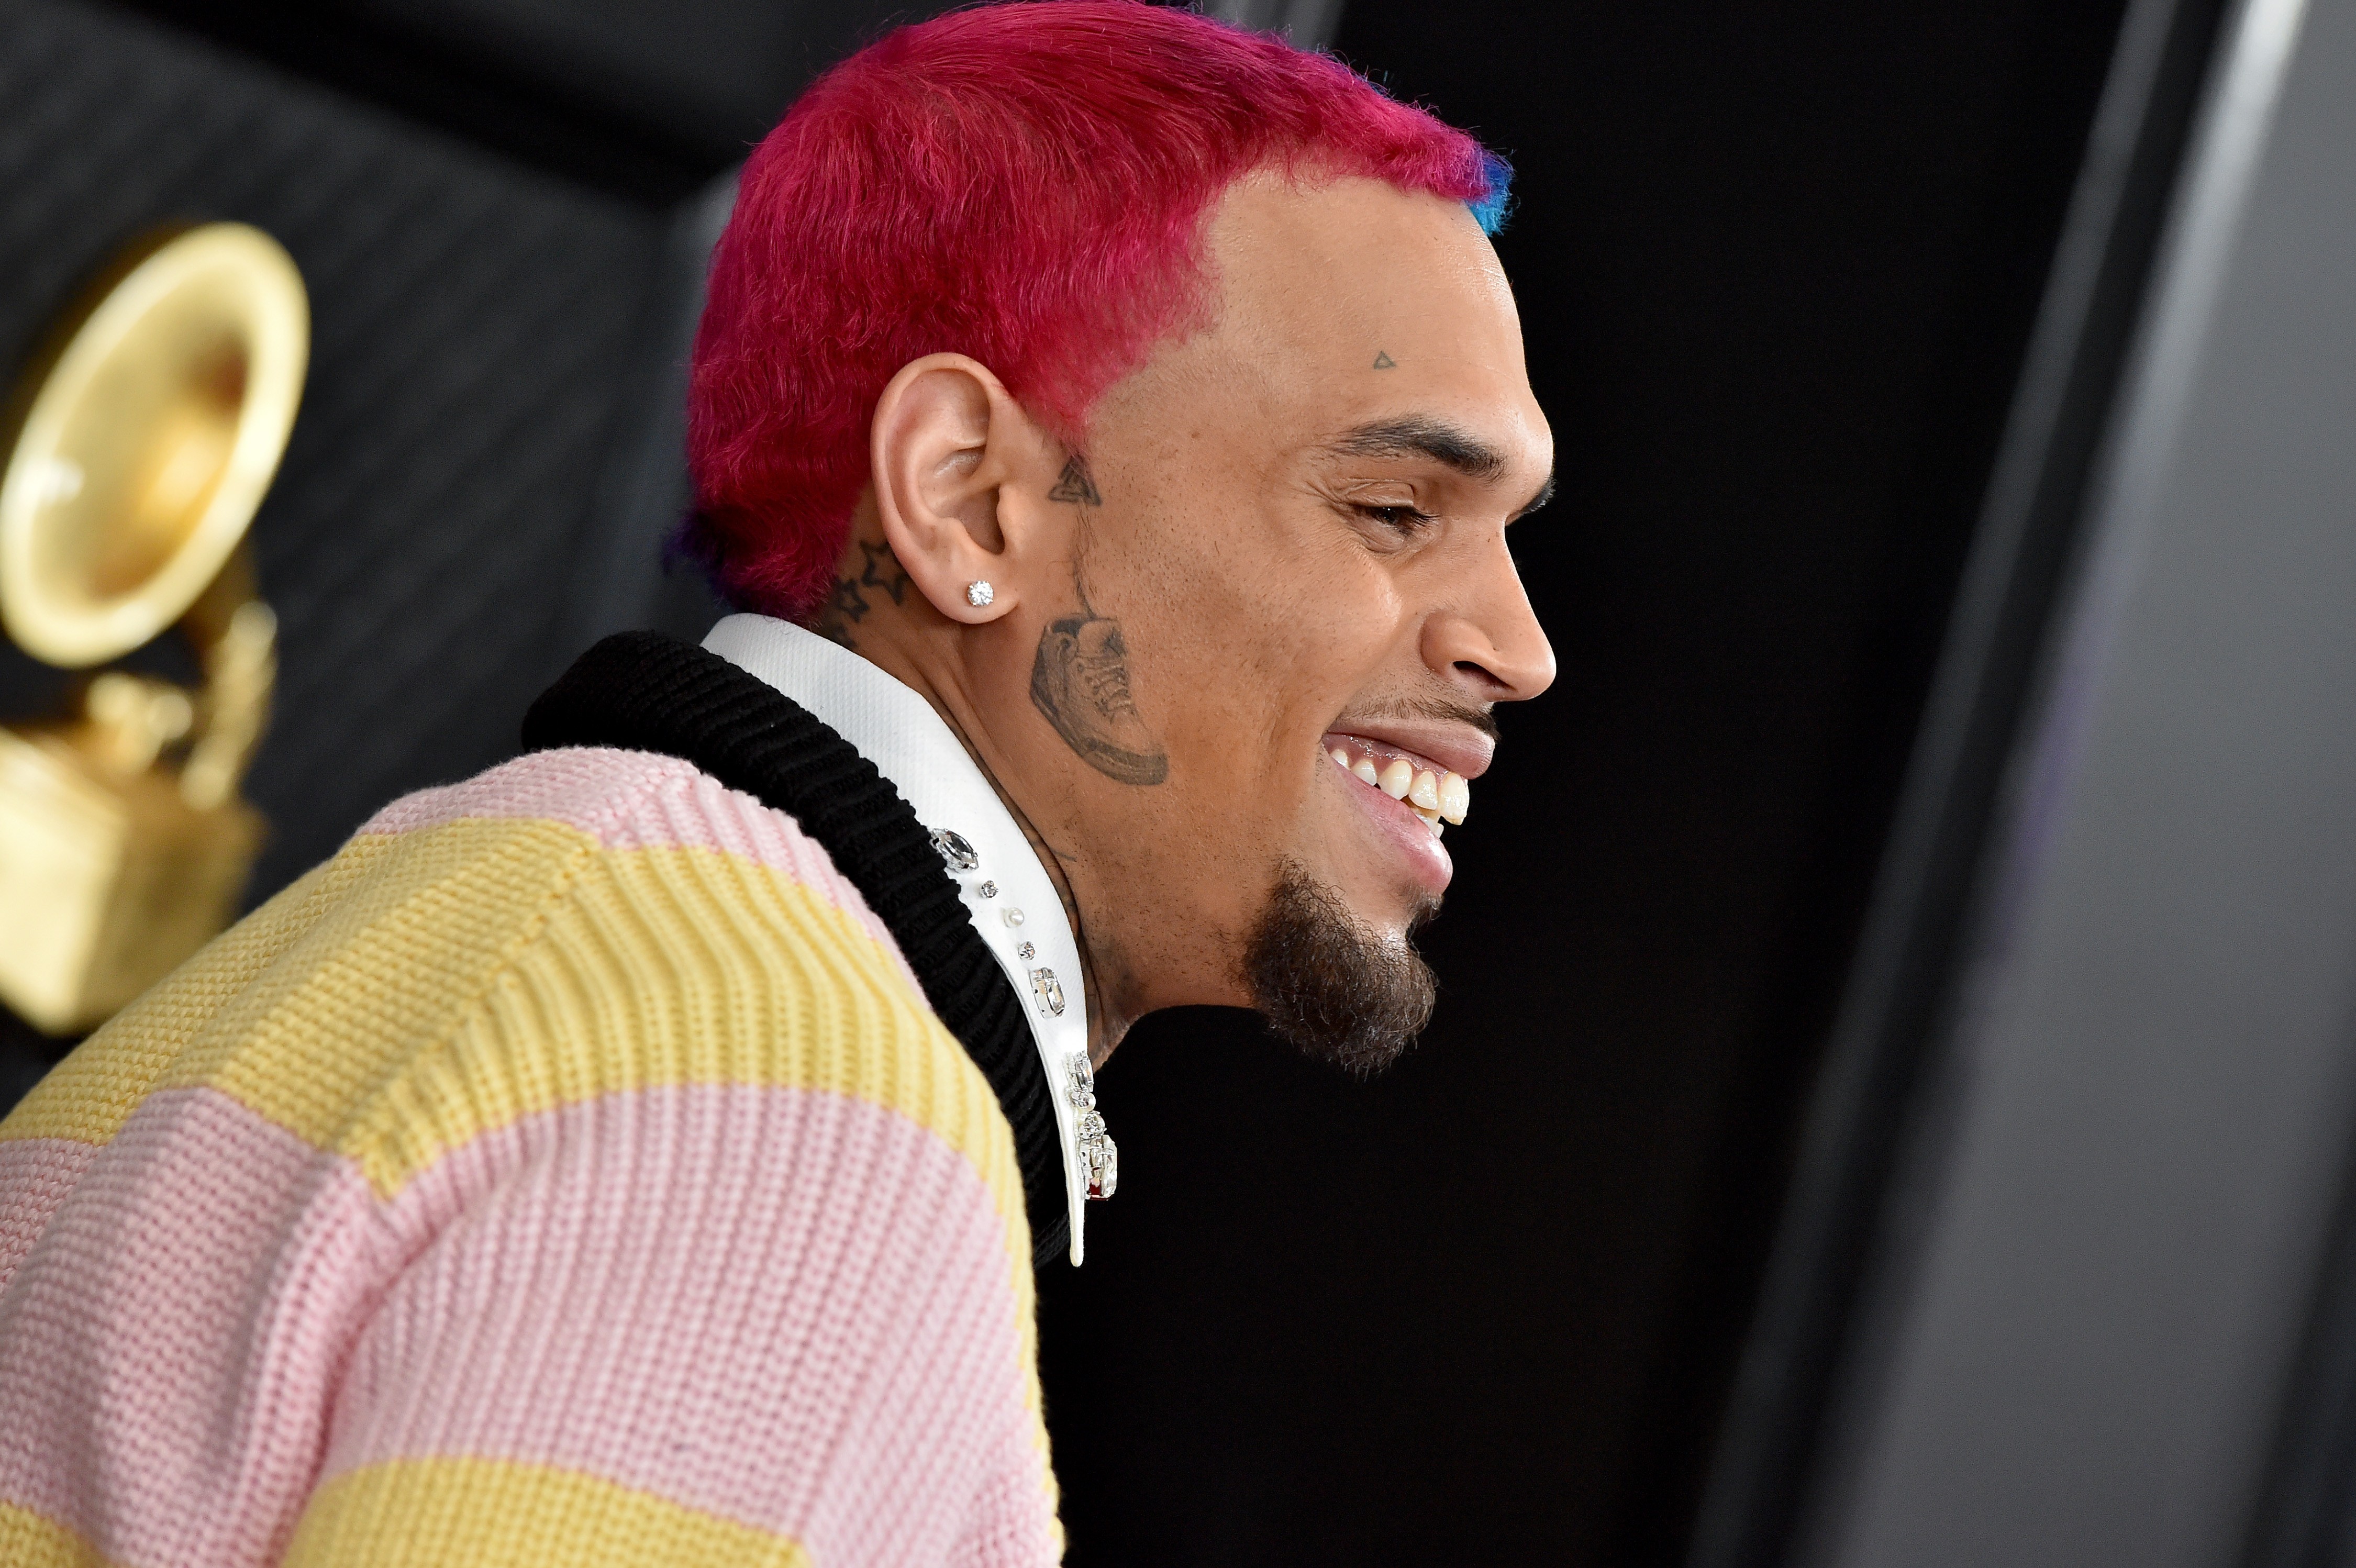 Tatto de tênis na bochecha: o que deu na cabeça de Chris Brown? (Foto: Getty Images)